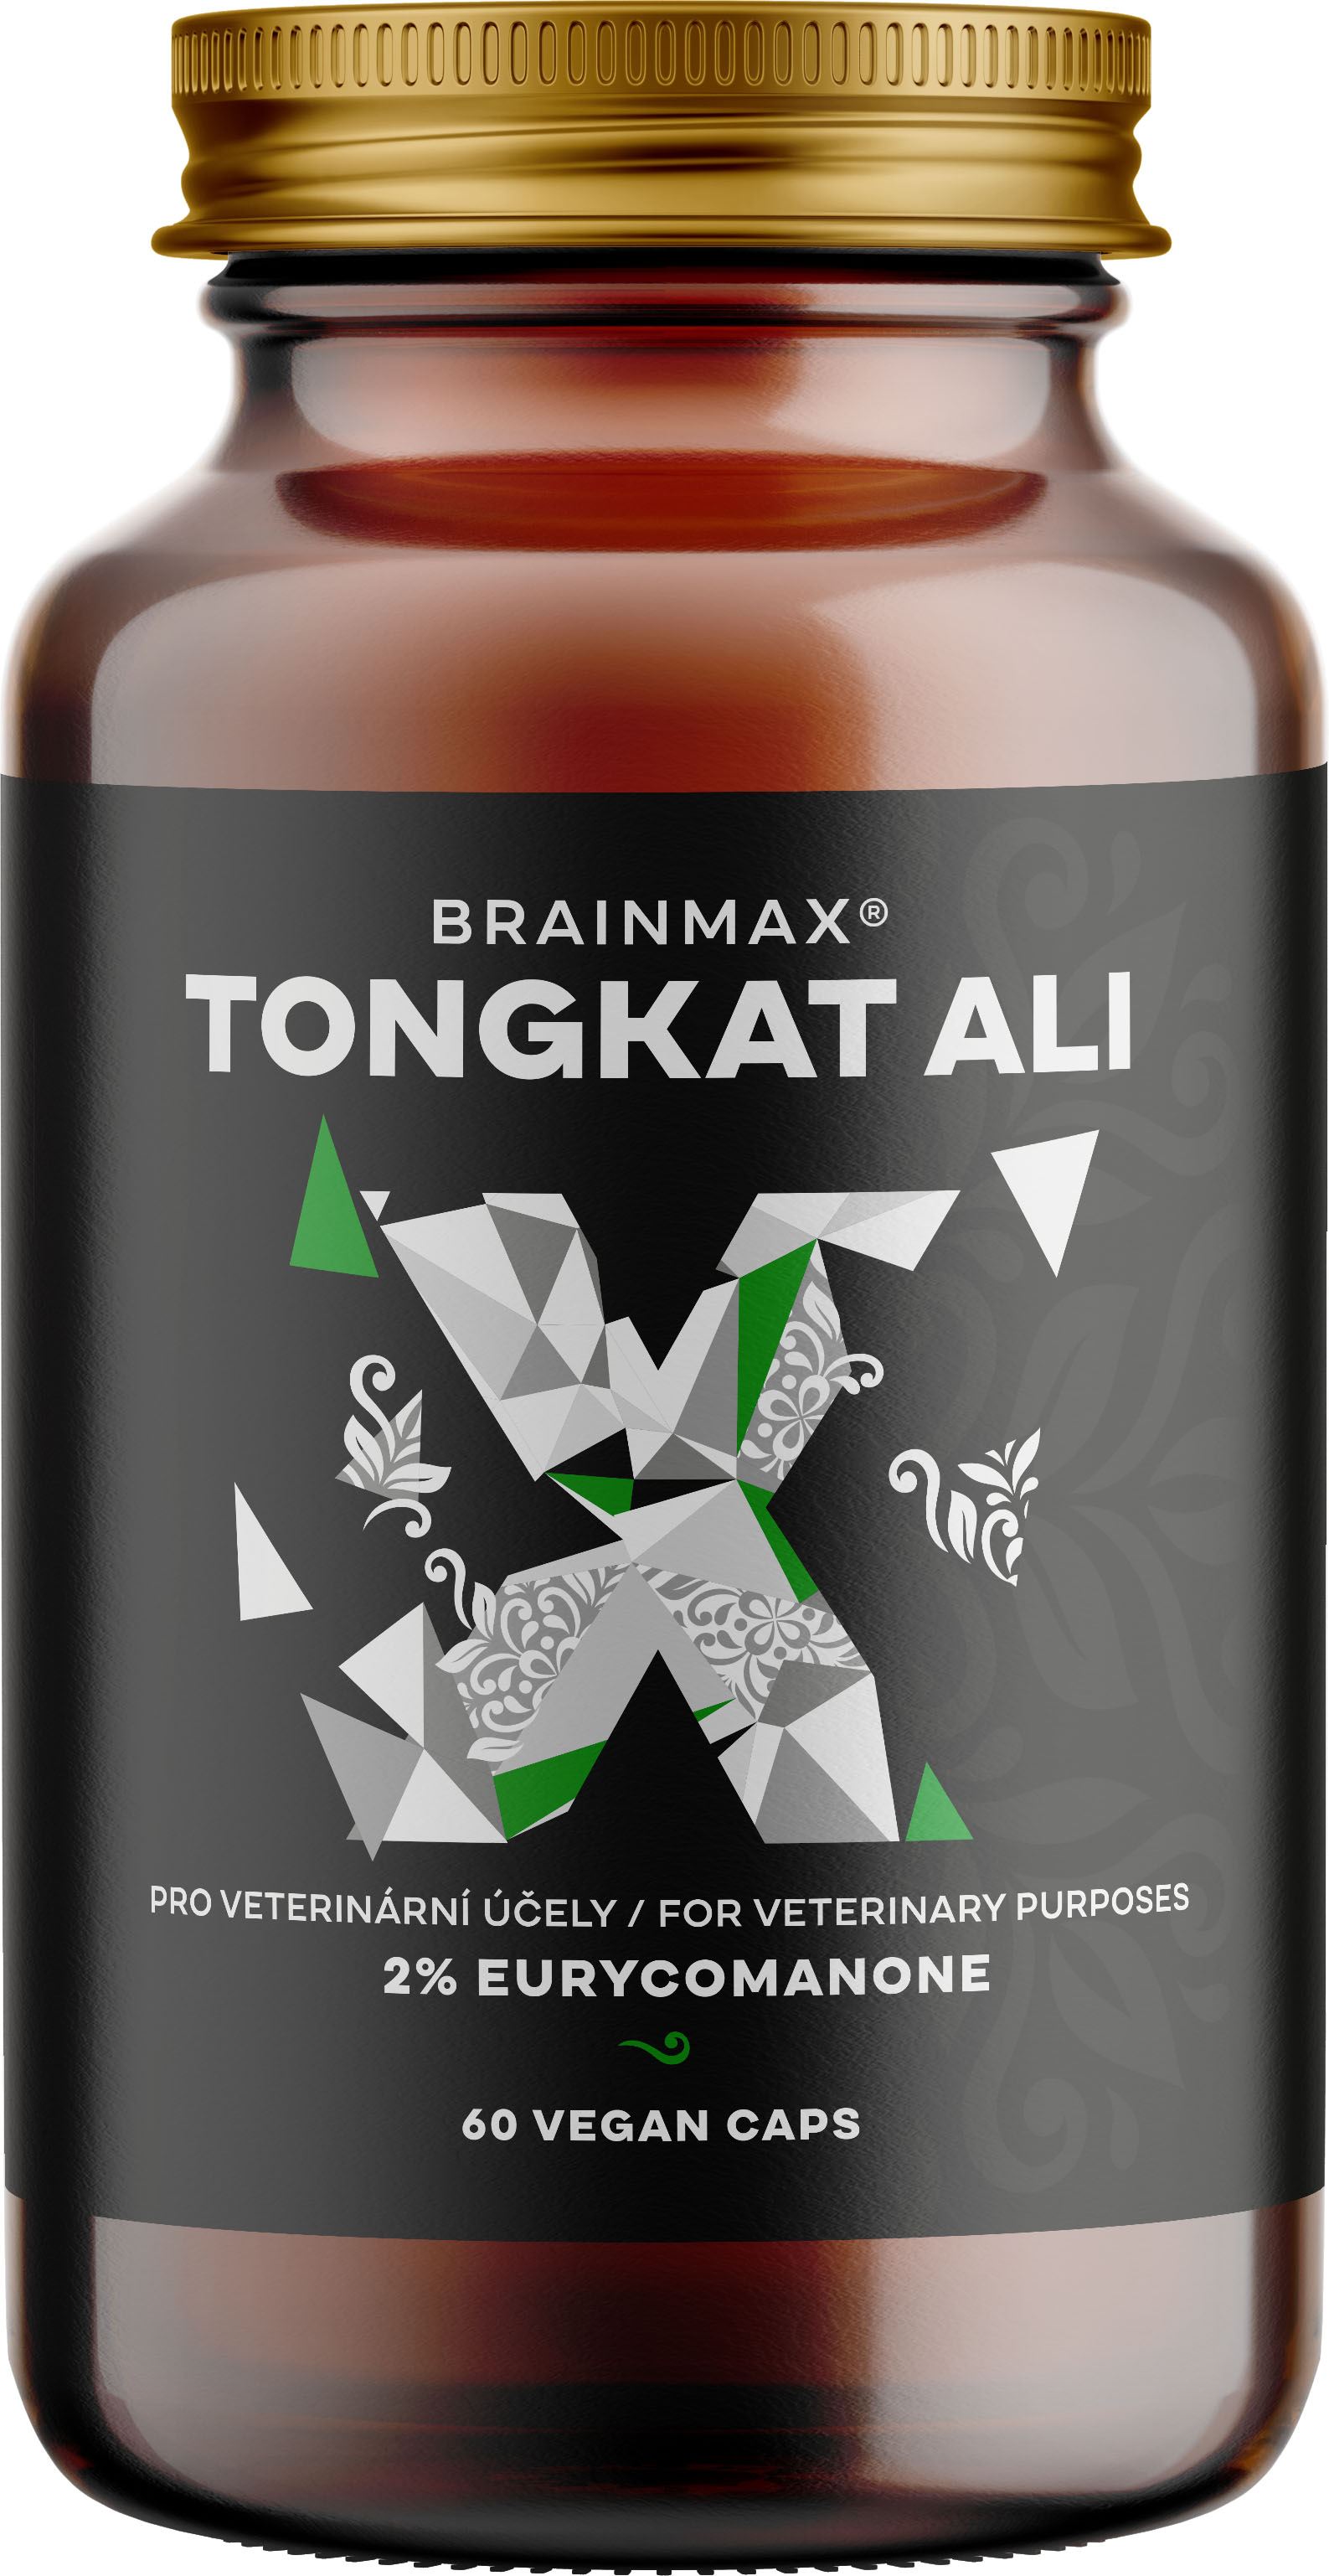 BrainMax T0ngkat Ali, extrémně silný extrakt, 500 mg, 60 rostlinných kapslí Nejsilnější extrakt na trhu! 2% eurykomanonů pro maximální účinek!